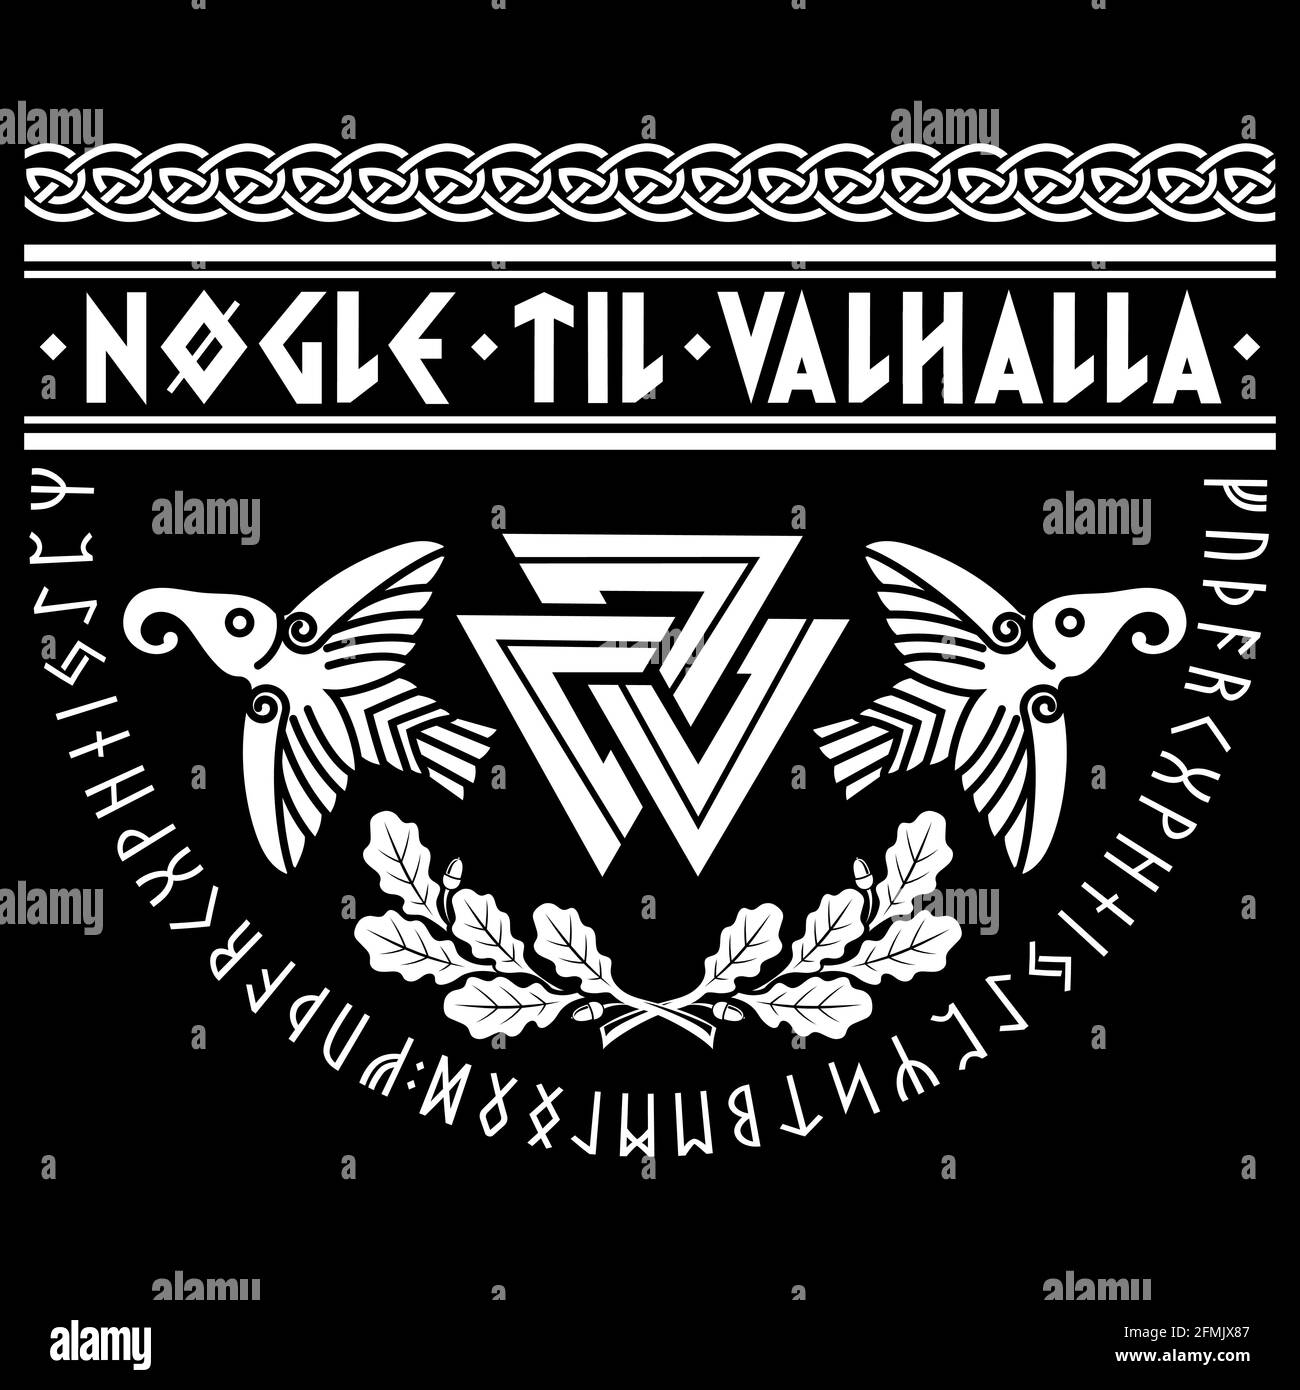 Valknut uraltes heidnisches nordgermanisches Symbol, alte skandinavische Runen, Wikinger-Slogan - die Schlüssel zu Valhalla, Eichenblätter und zwei Raben Stock Vektor